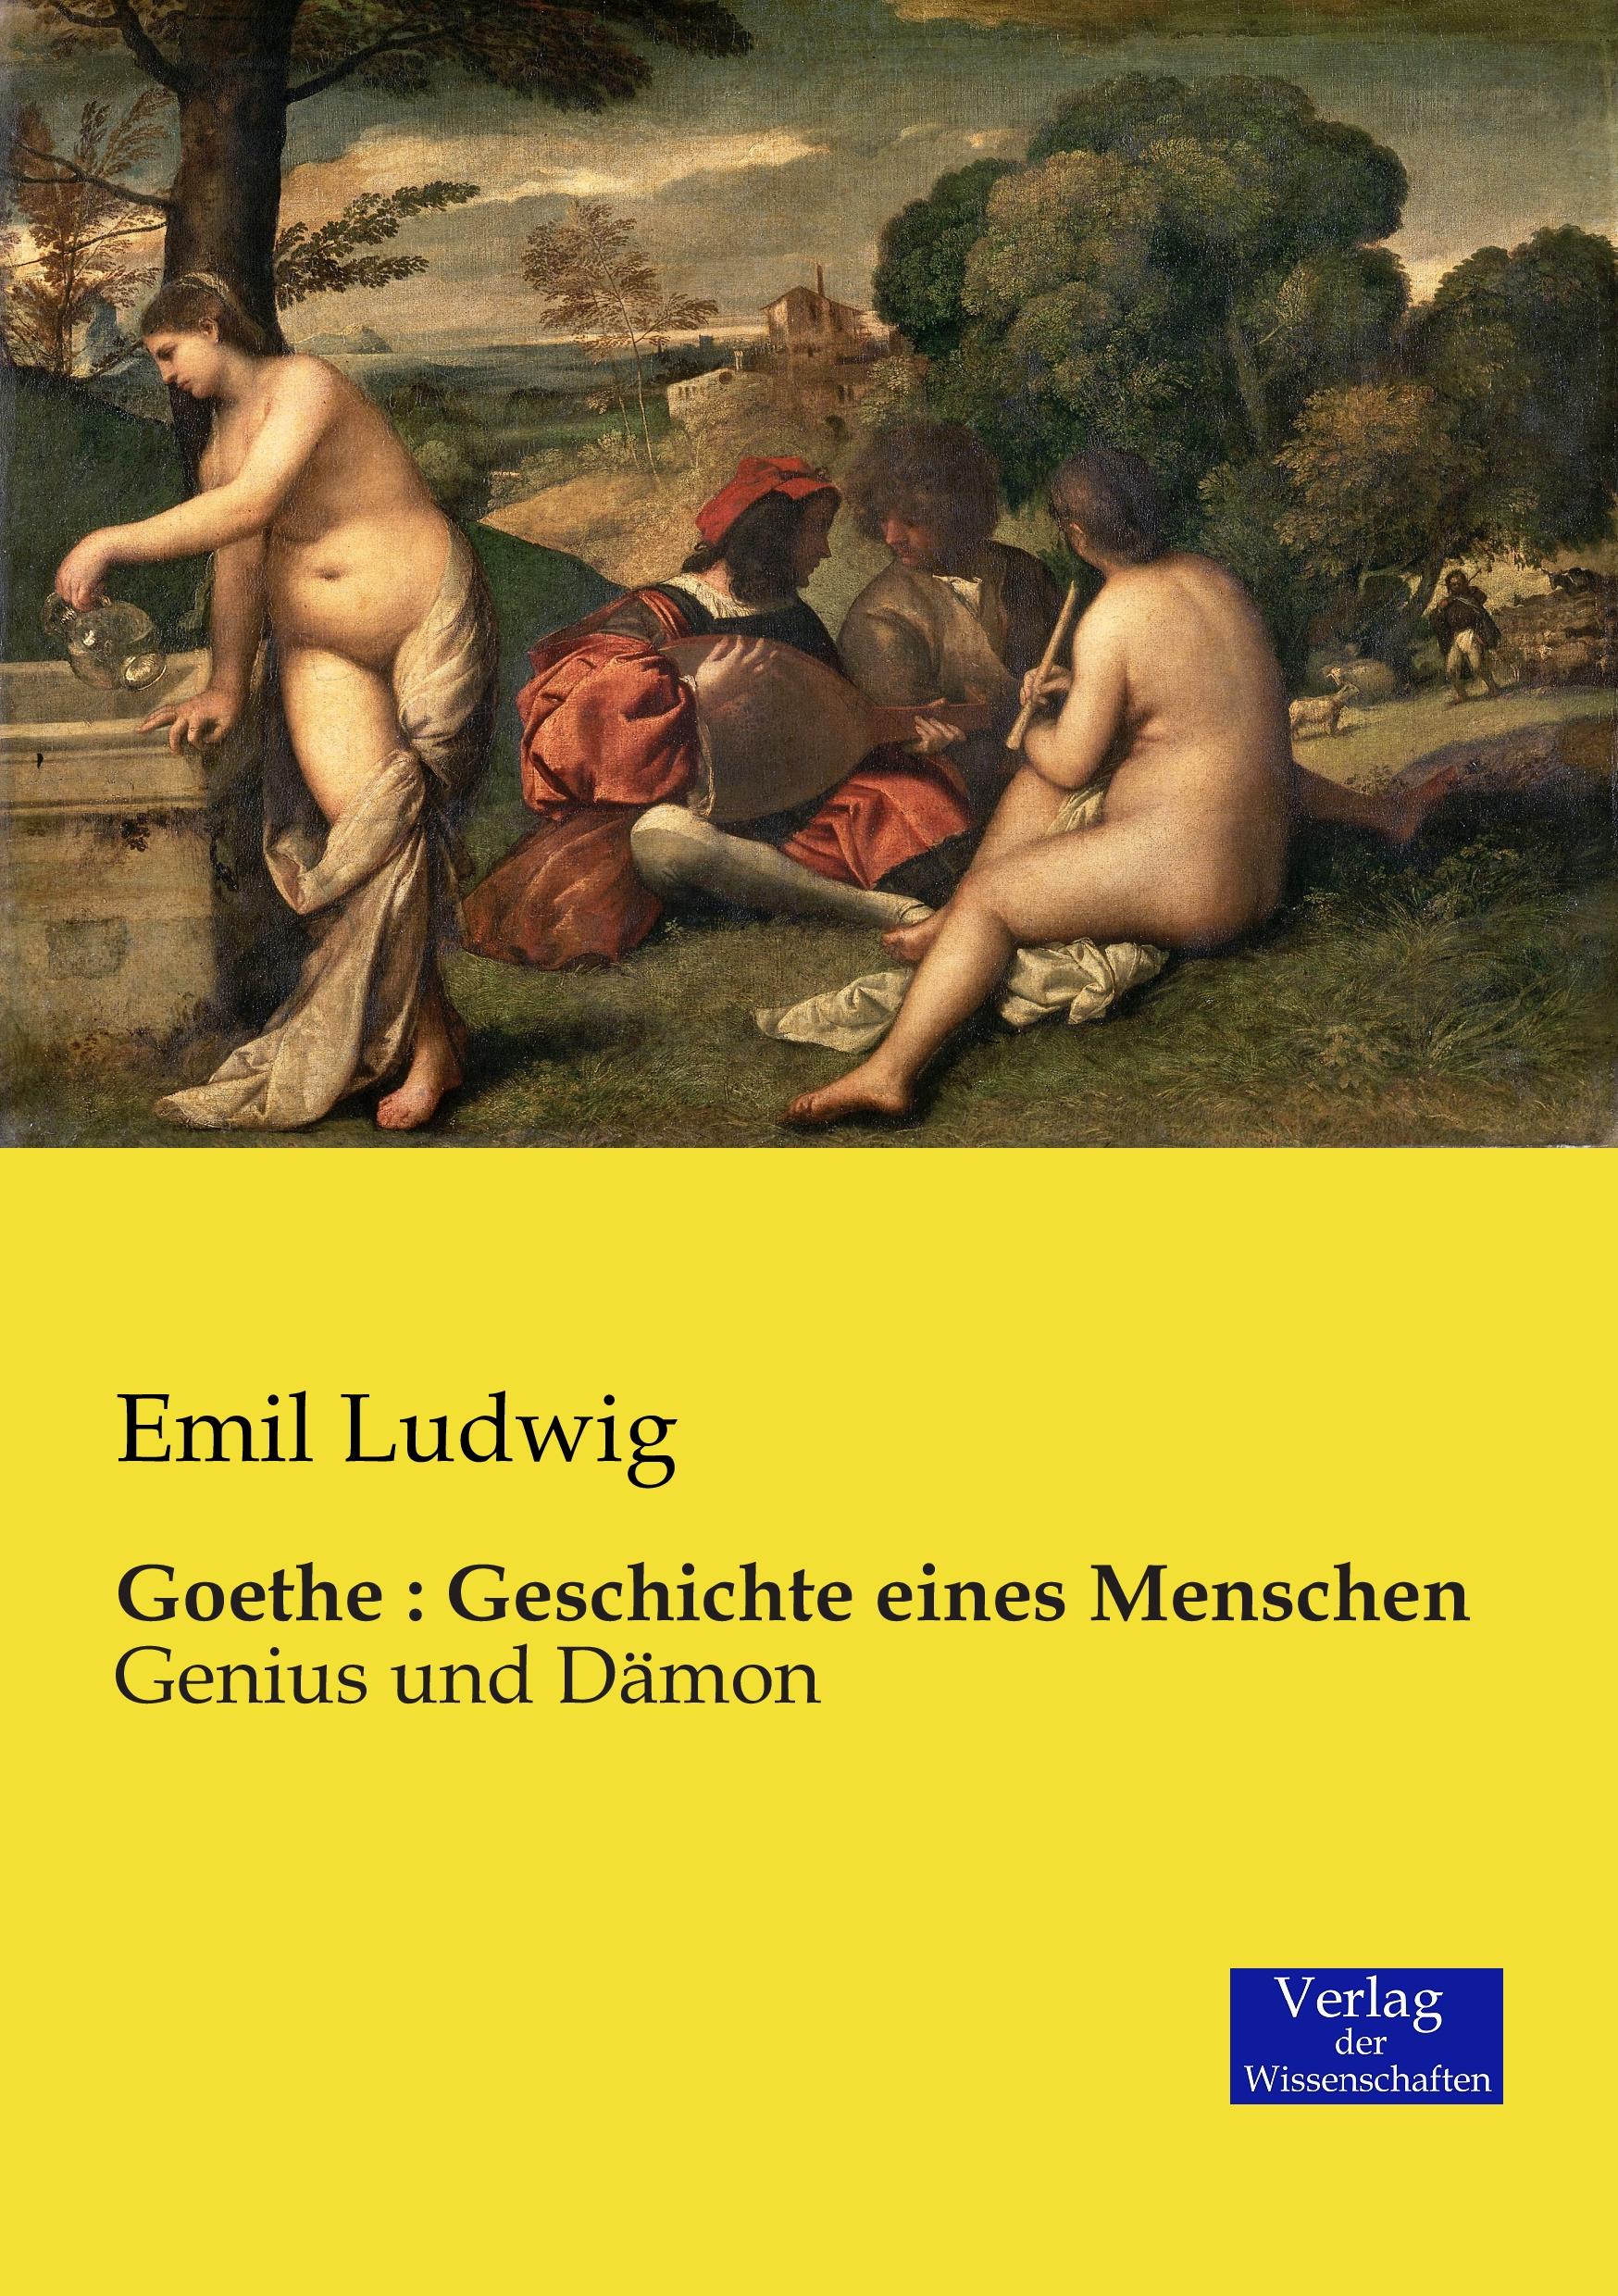 Goethe : Geschichte eines Menschen / Genius und Dämon / Emil Ludwig / Taschenbuch / Paperback / 452 S. / Deutsch / 2019 / Vero Verlag / EAN 9783957006059 - Ludwig, Emil